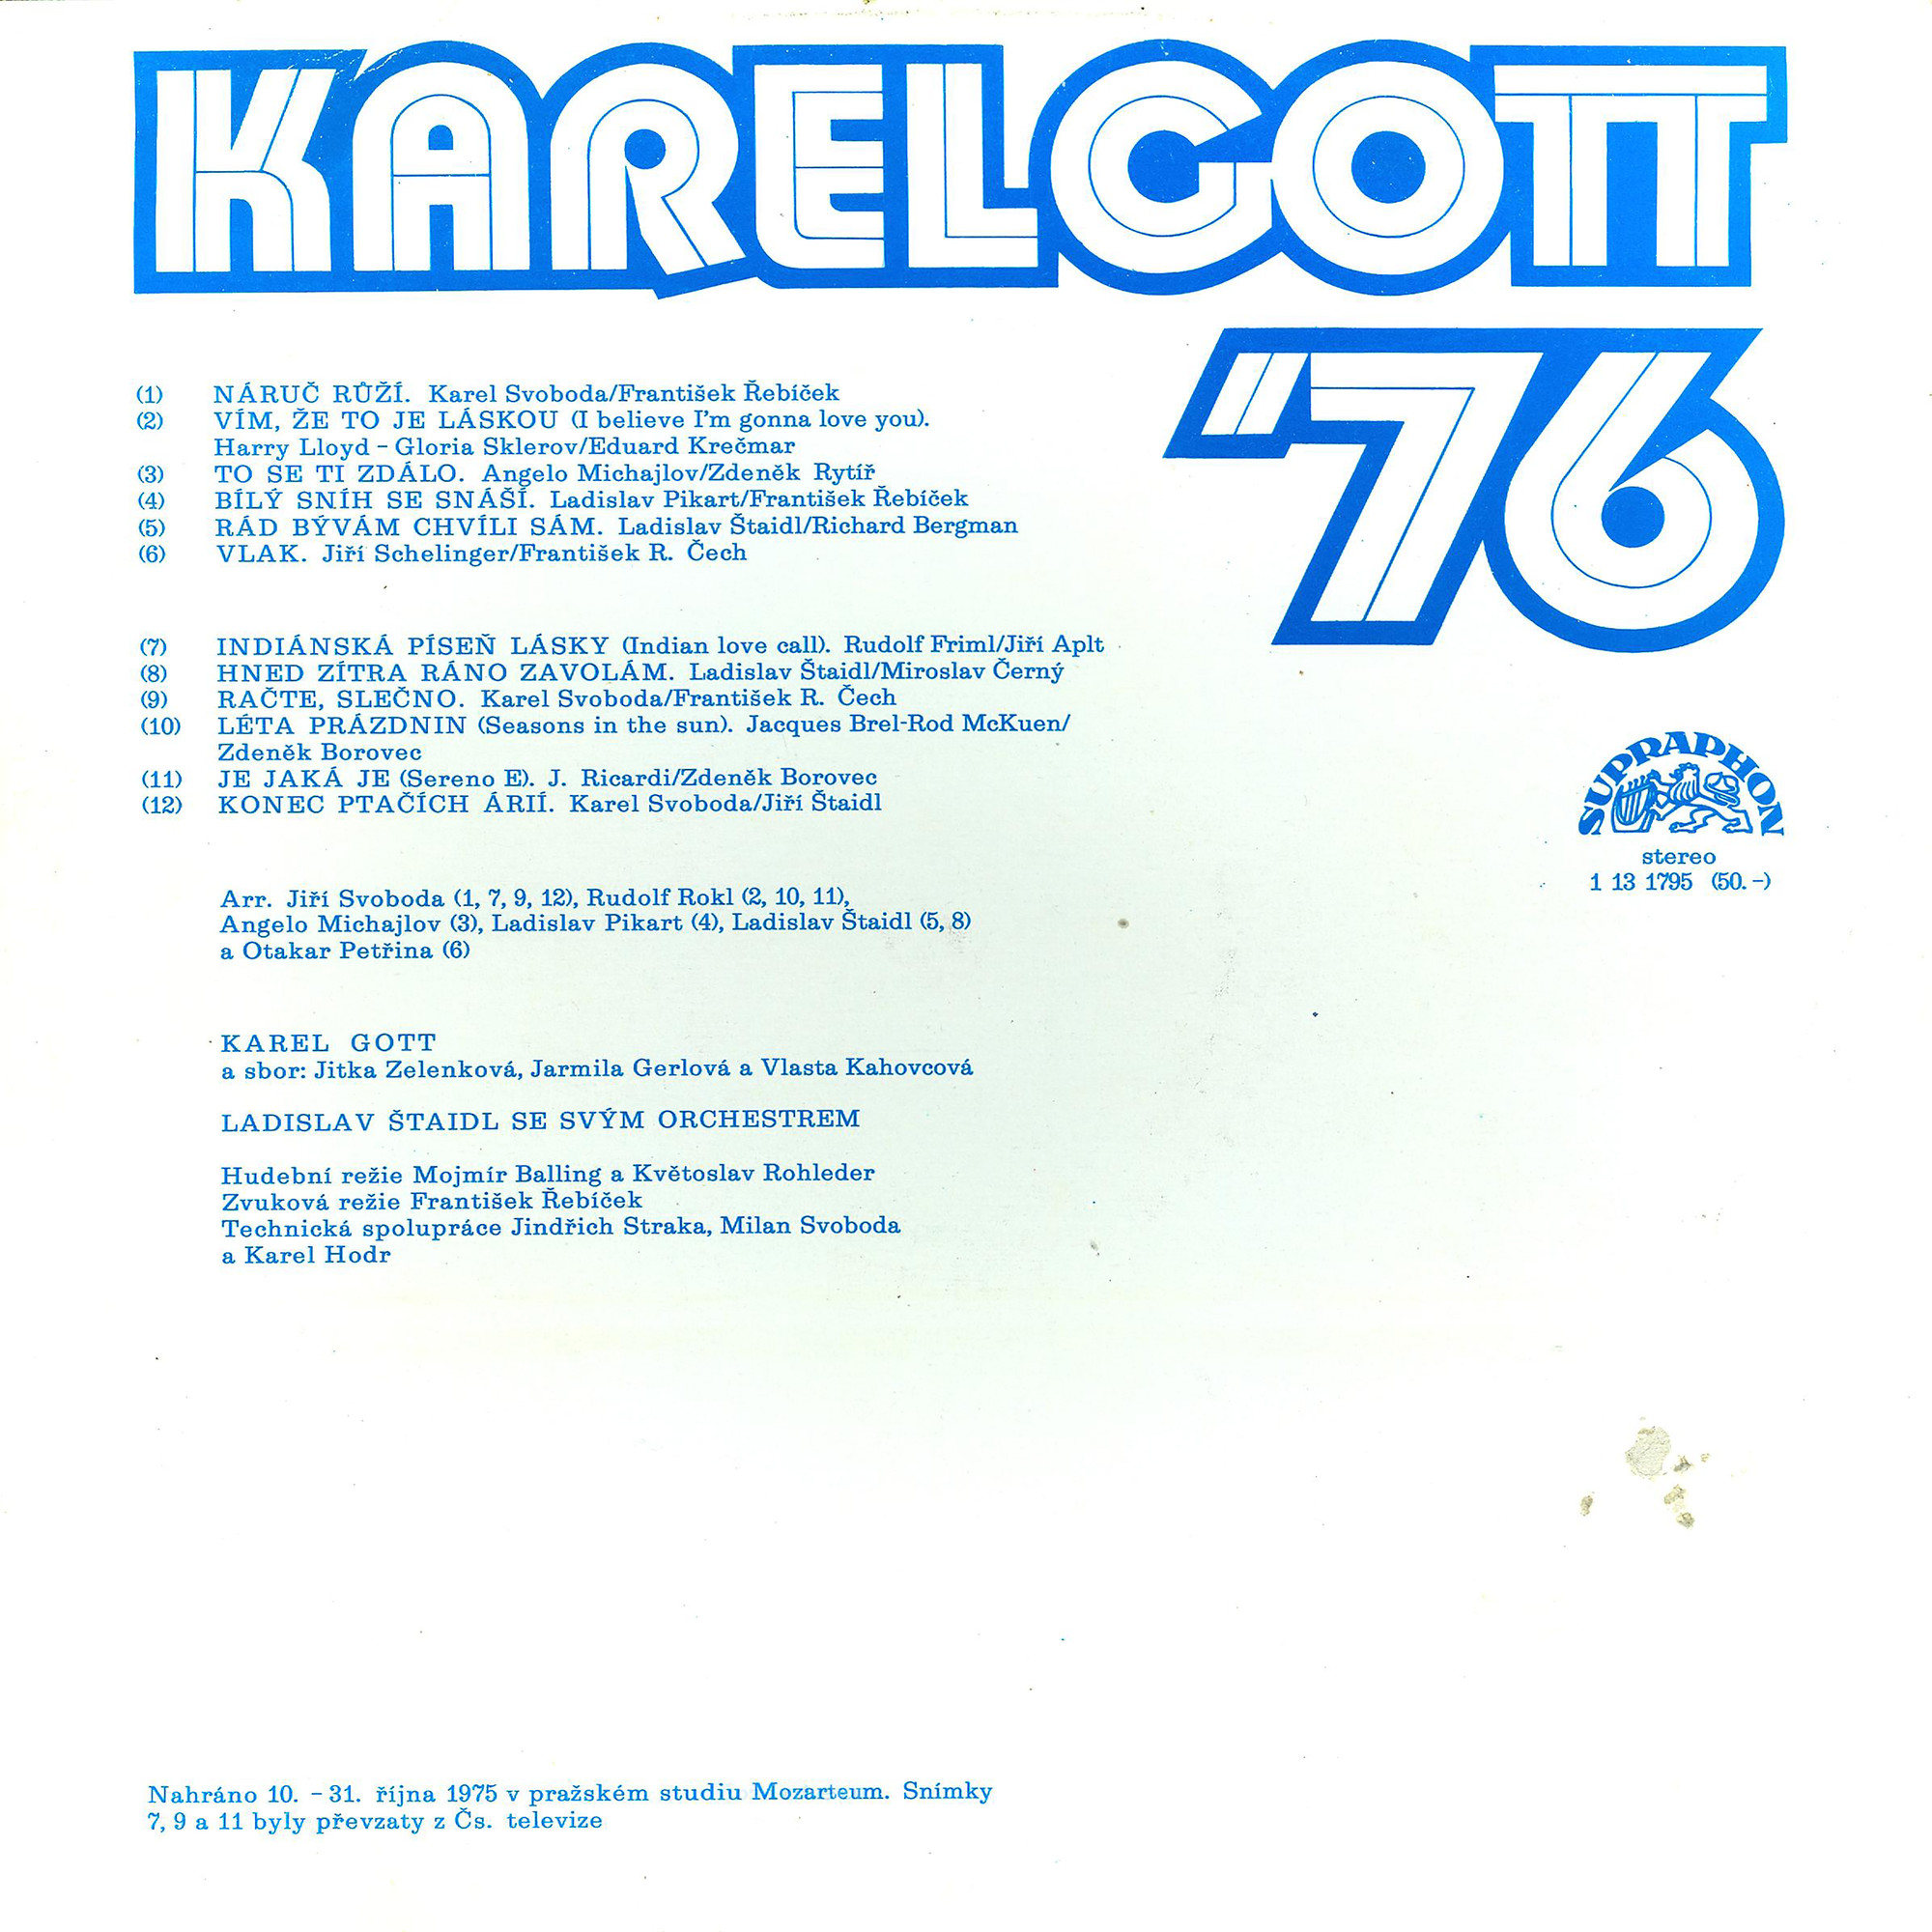 Karel Gott '76 [по заказу чешской фирмы SUPRAPHON 1 13 1795]